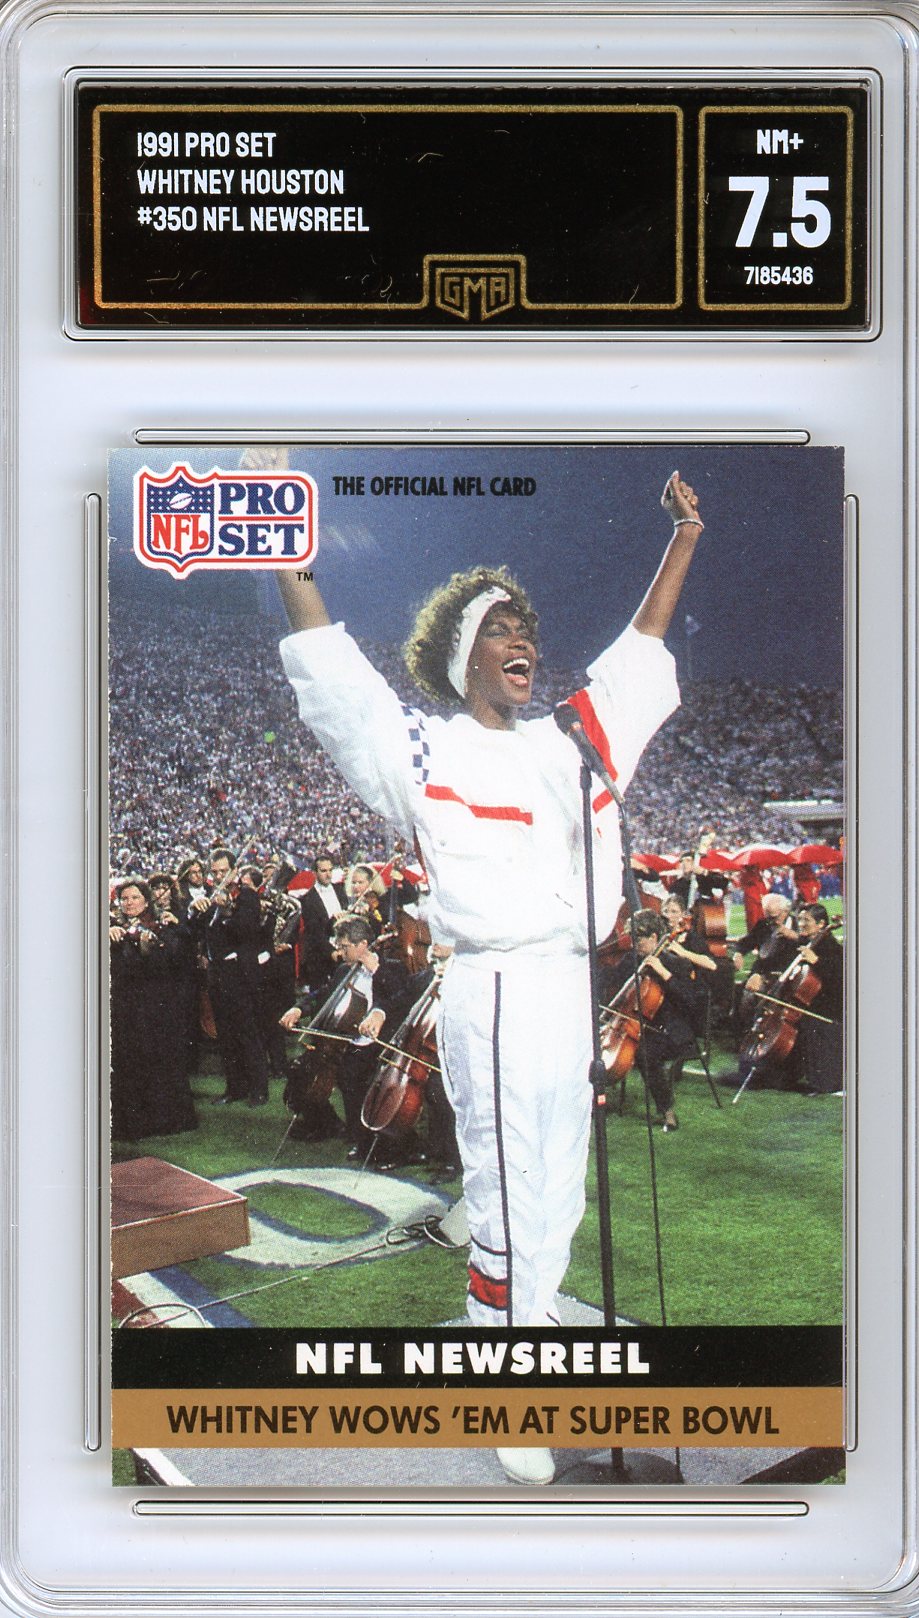 1991 Pro Set Whitney Houston #350 NFL Newsreel Card GMA 7.5